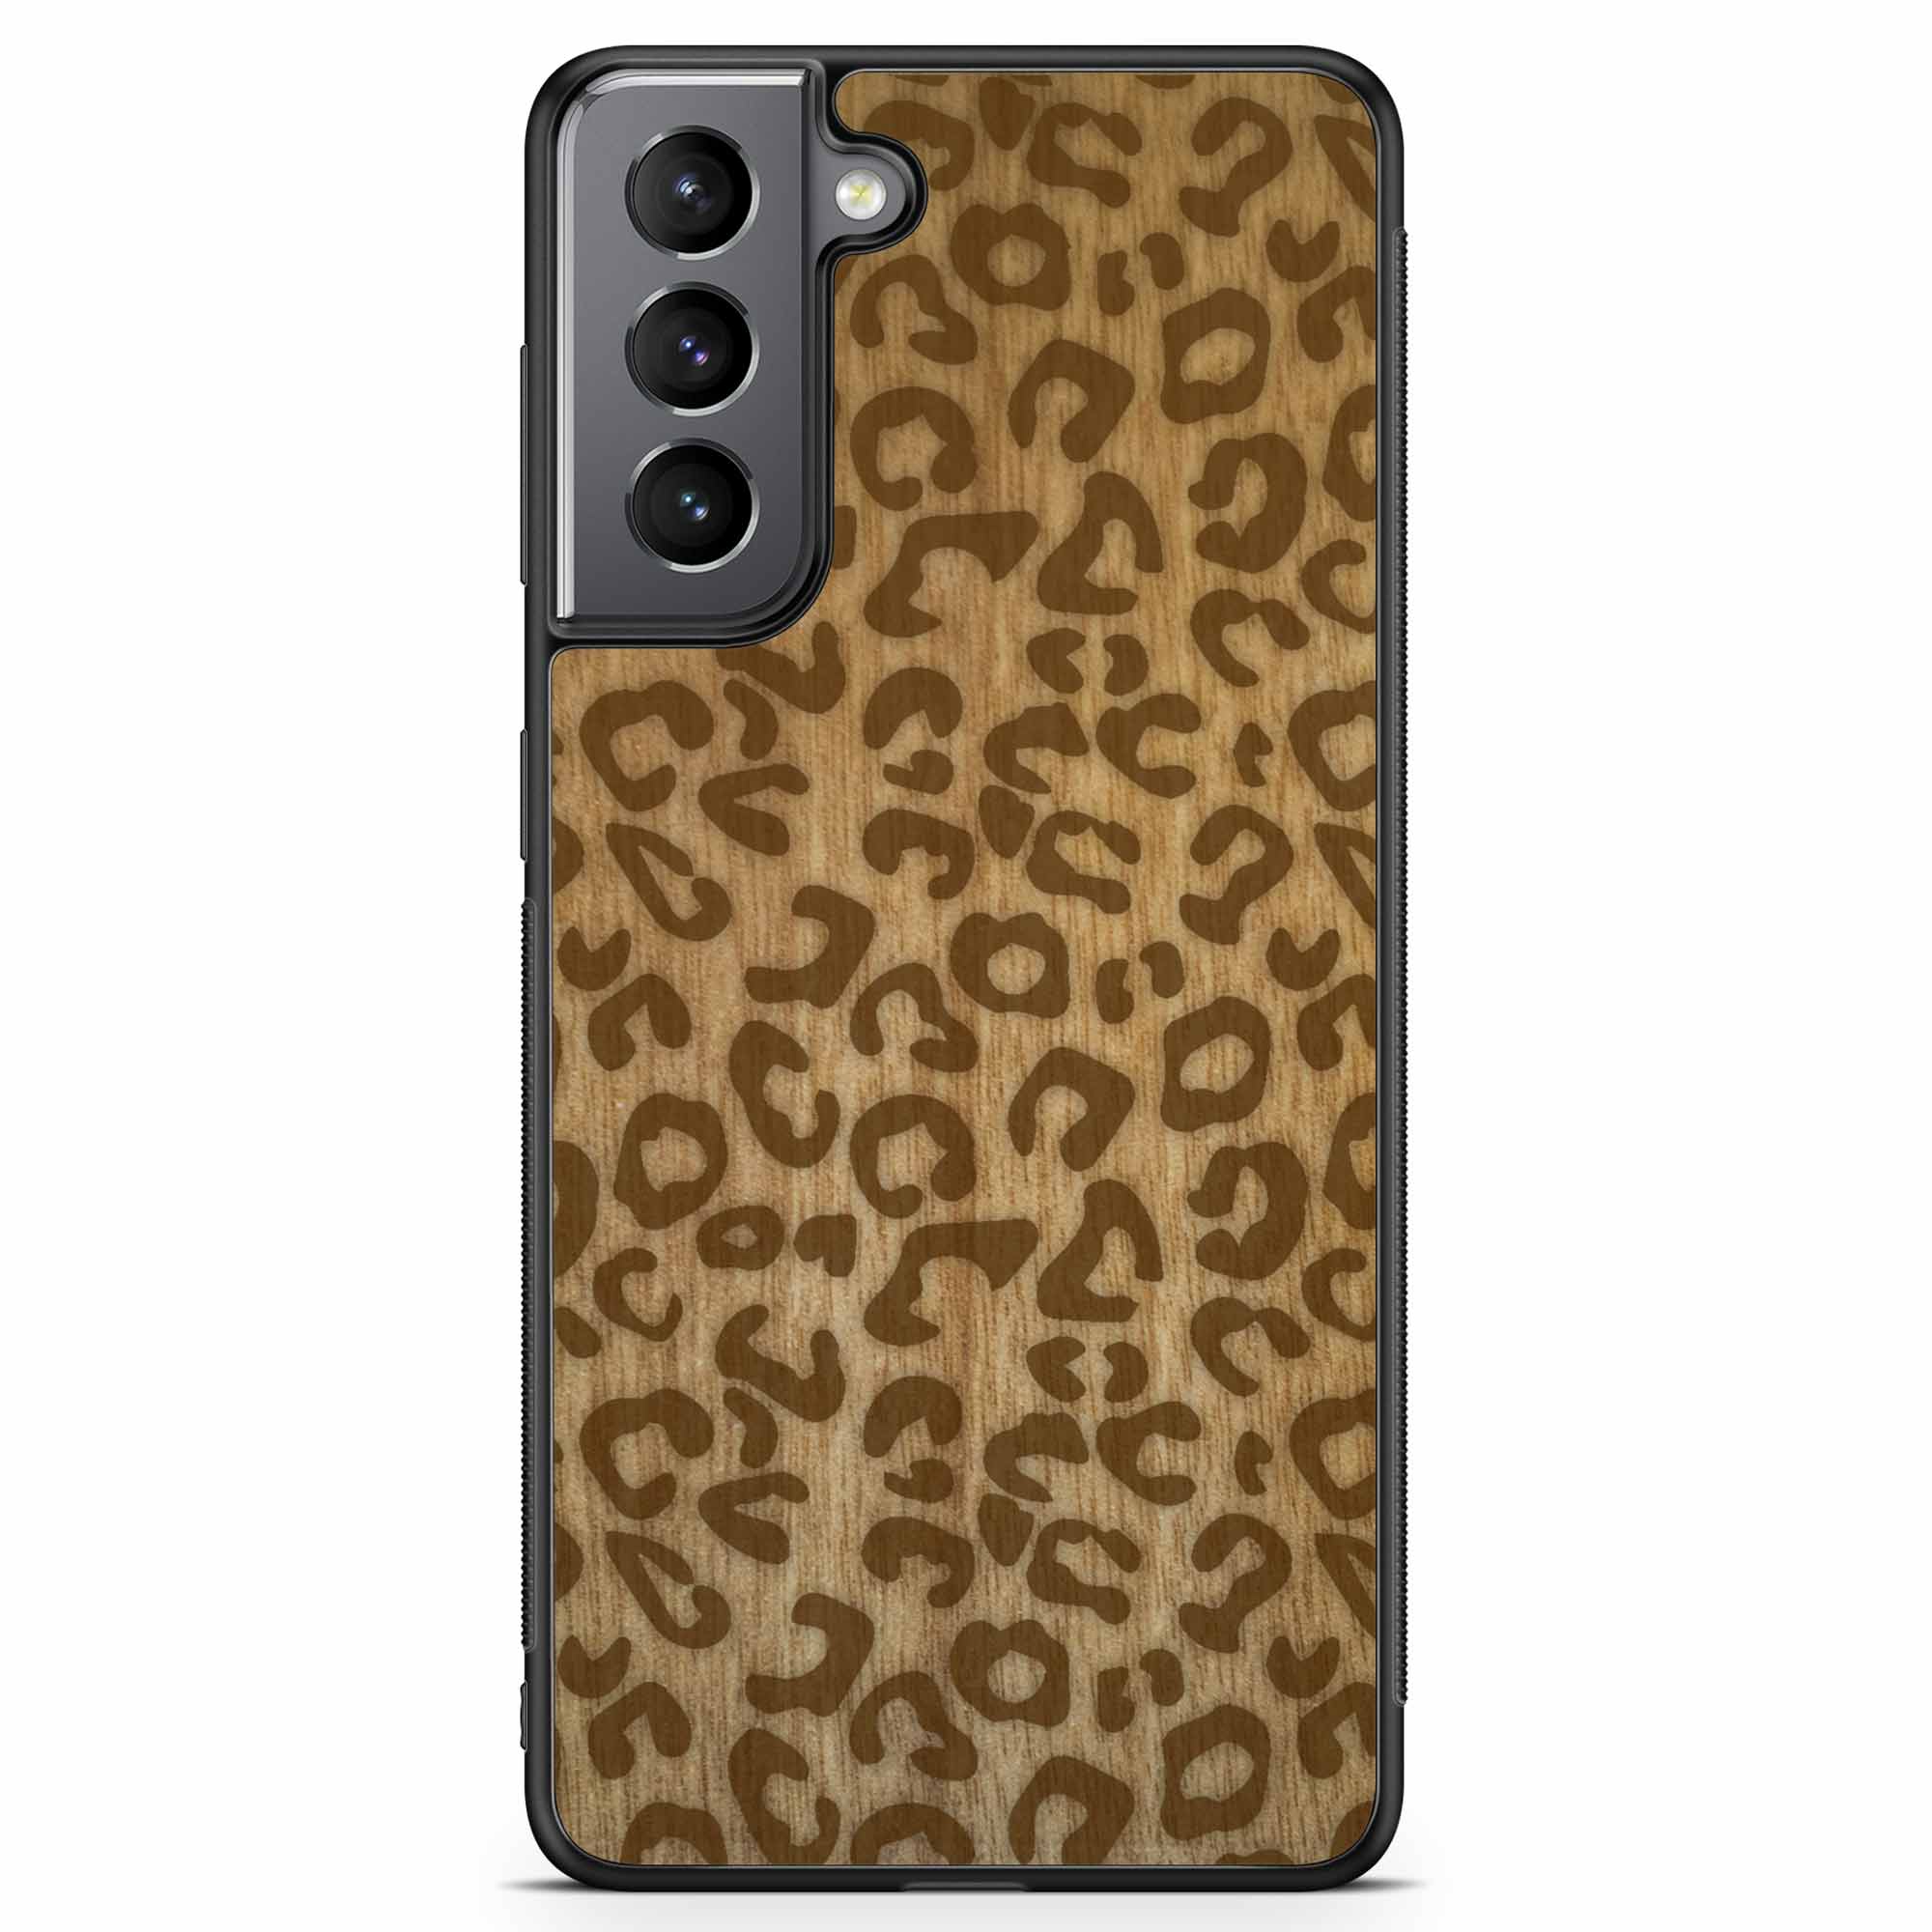 Custodia in legno per Samsung S21 con stampa ghepardo